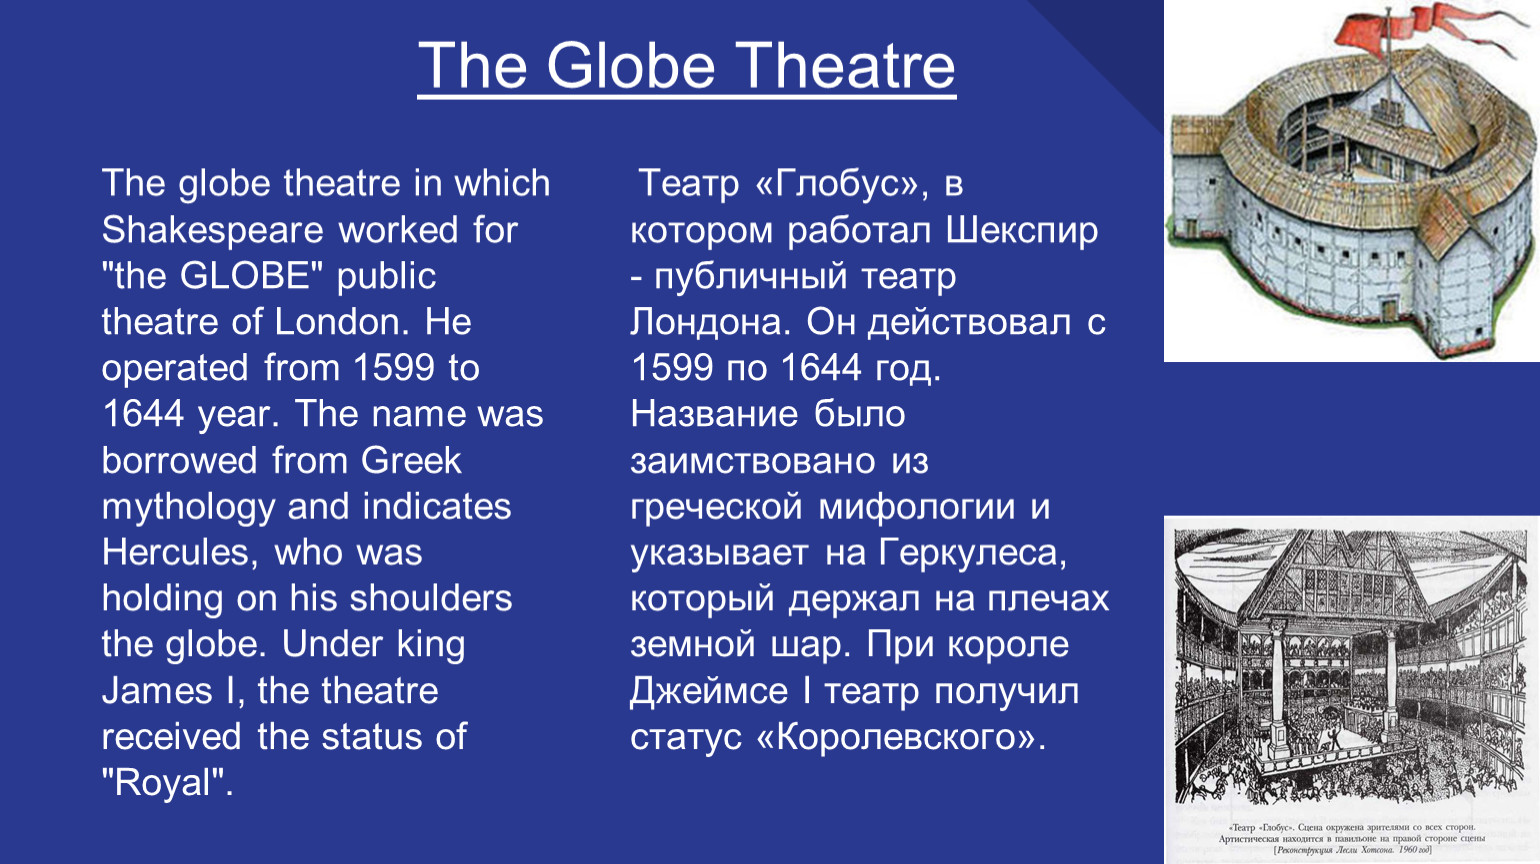 Theatre перевод на русский. Театр Глобус Шекспира 1599. Вильям Шекспир театр Глобус. Театр Глобус в Лондоне в 1644. Англия. Театр «Глобус» (16 в.).